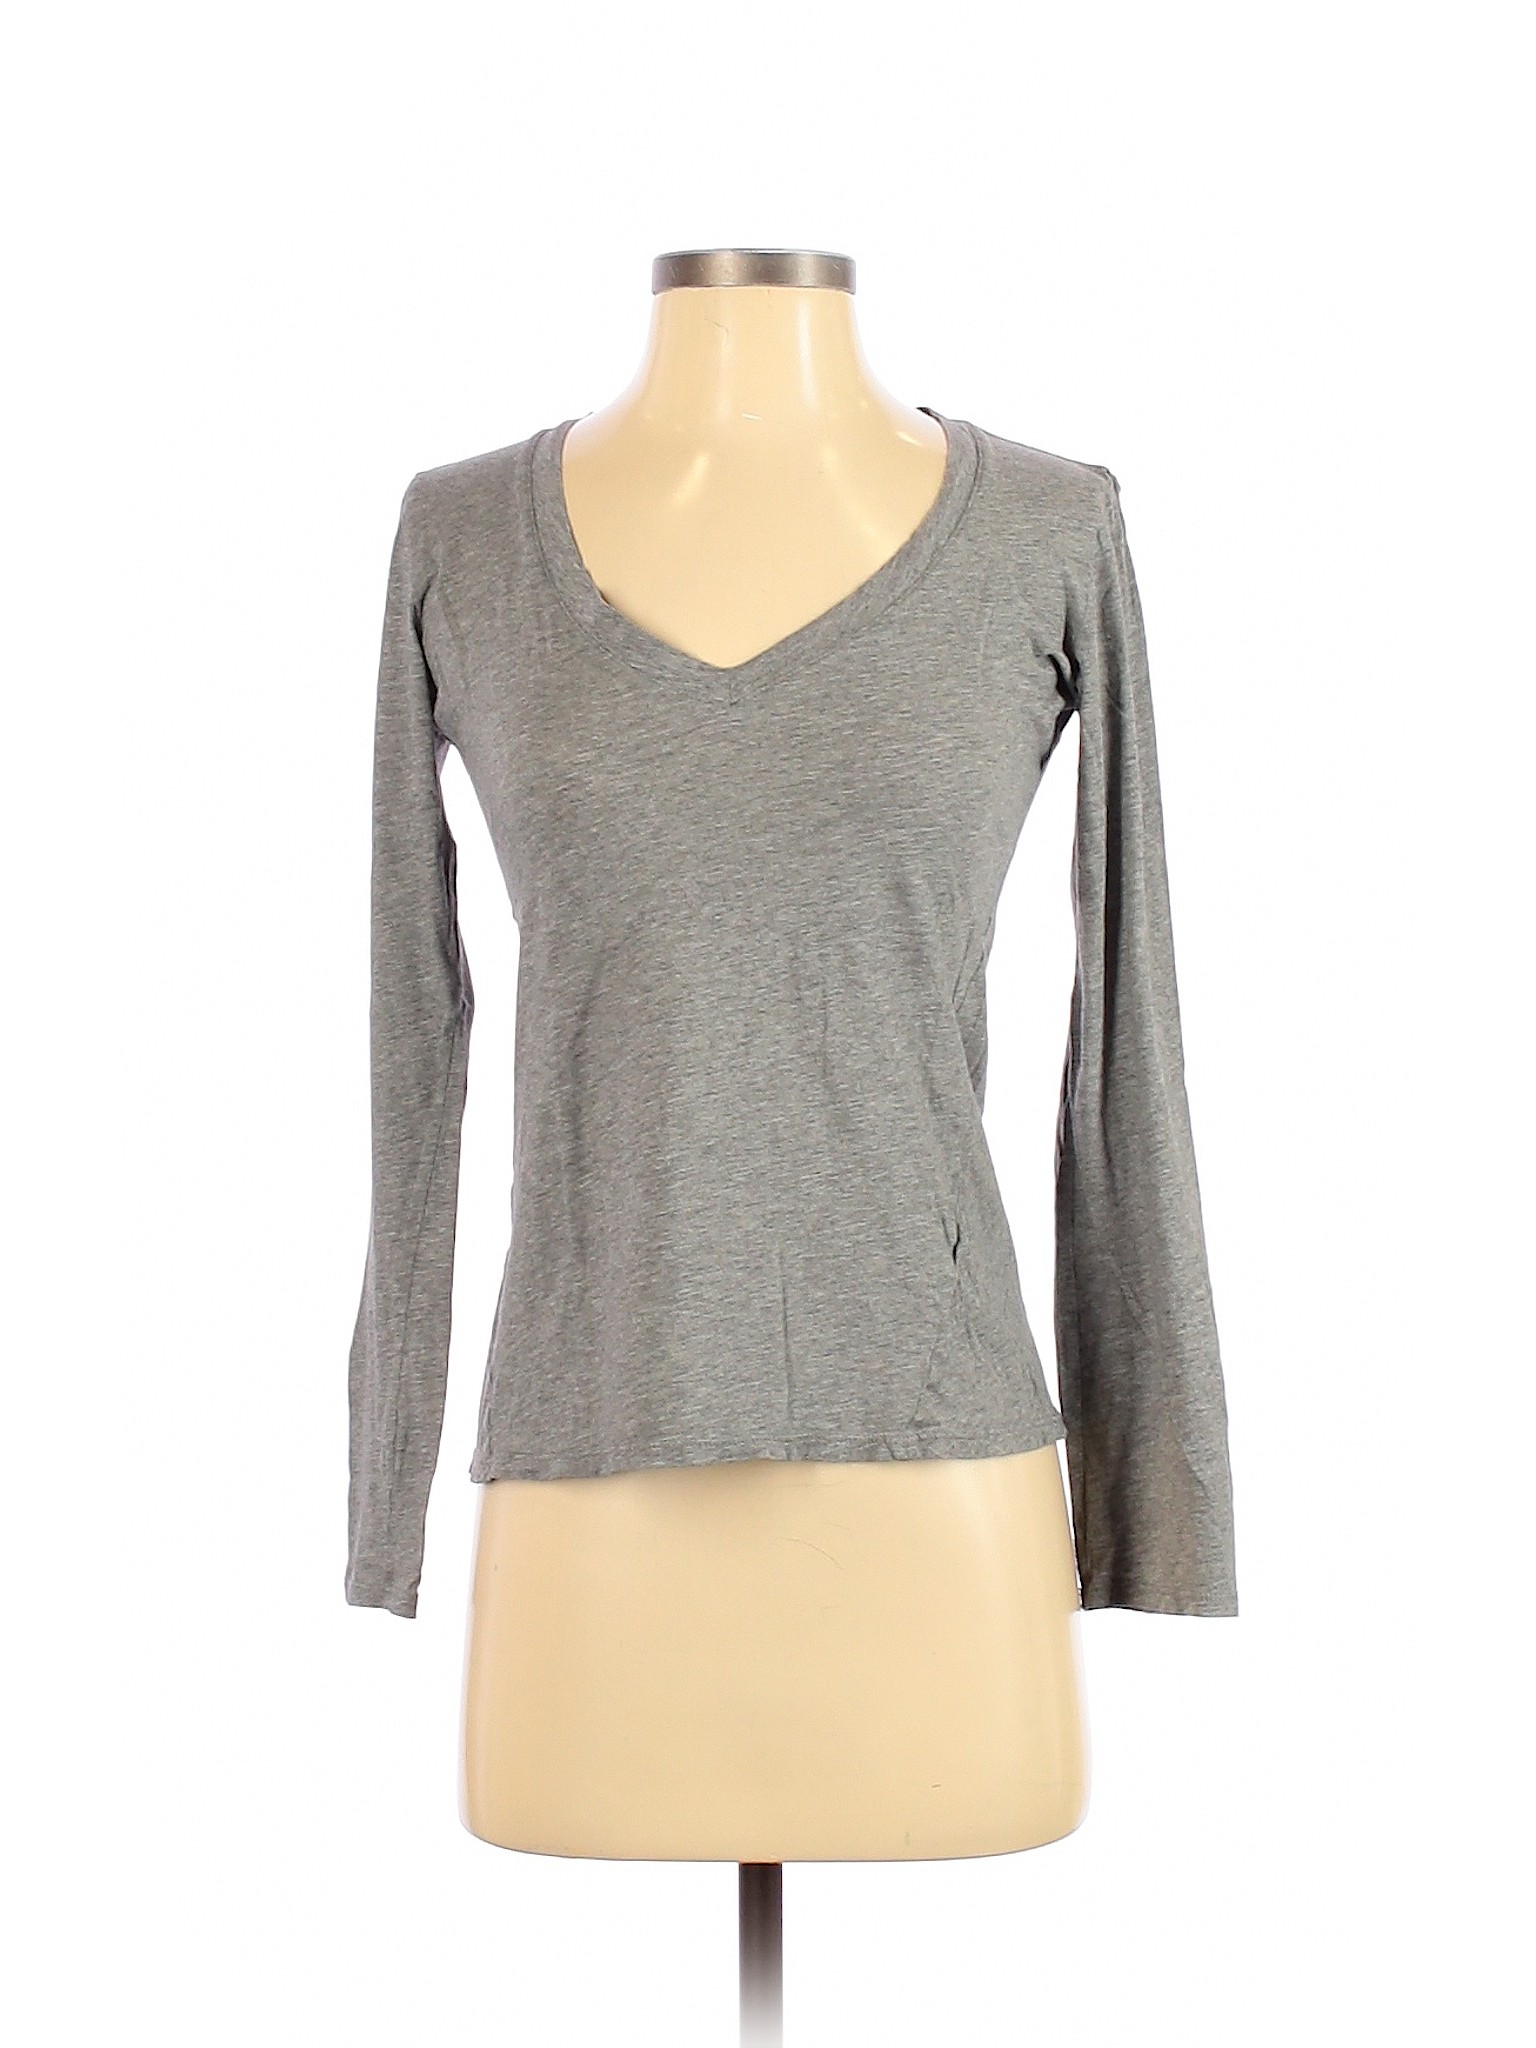 RLX Ralph Lauren Women Gray Long Sleeve T-Shirt S | eBay